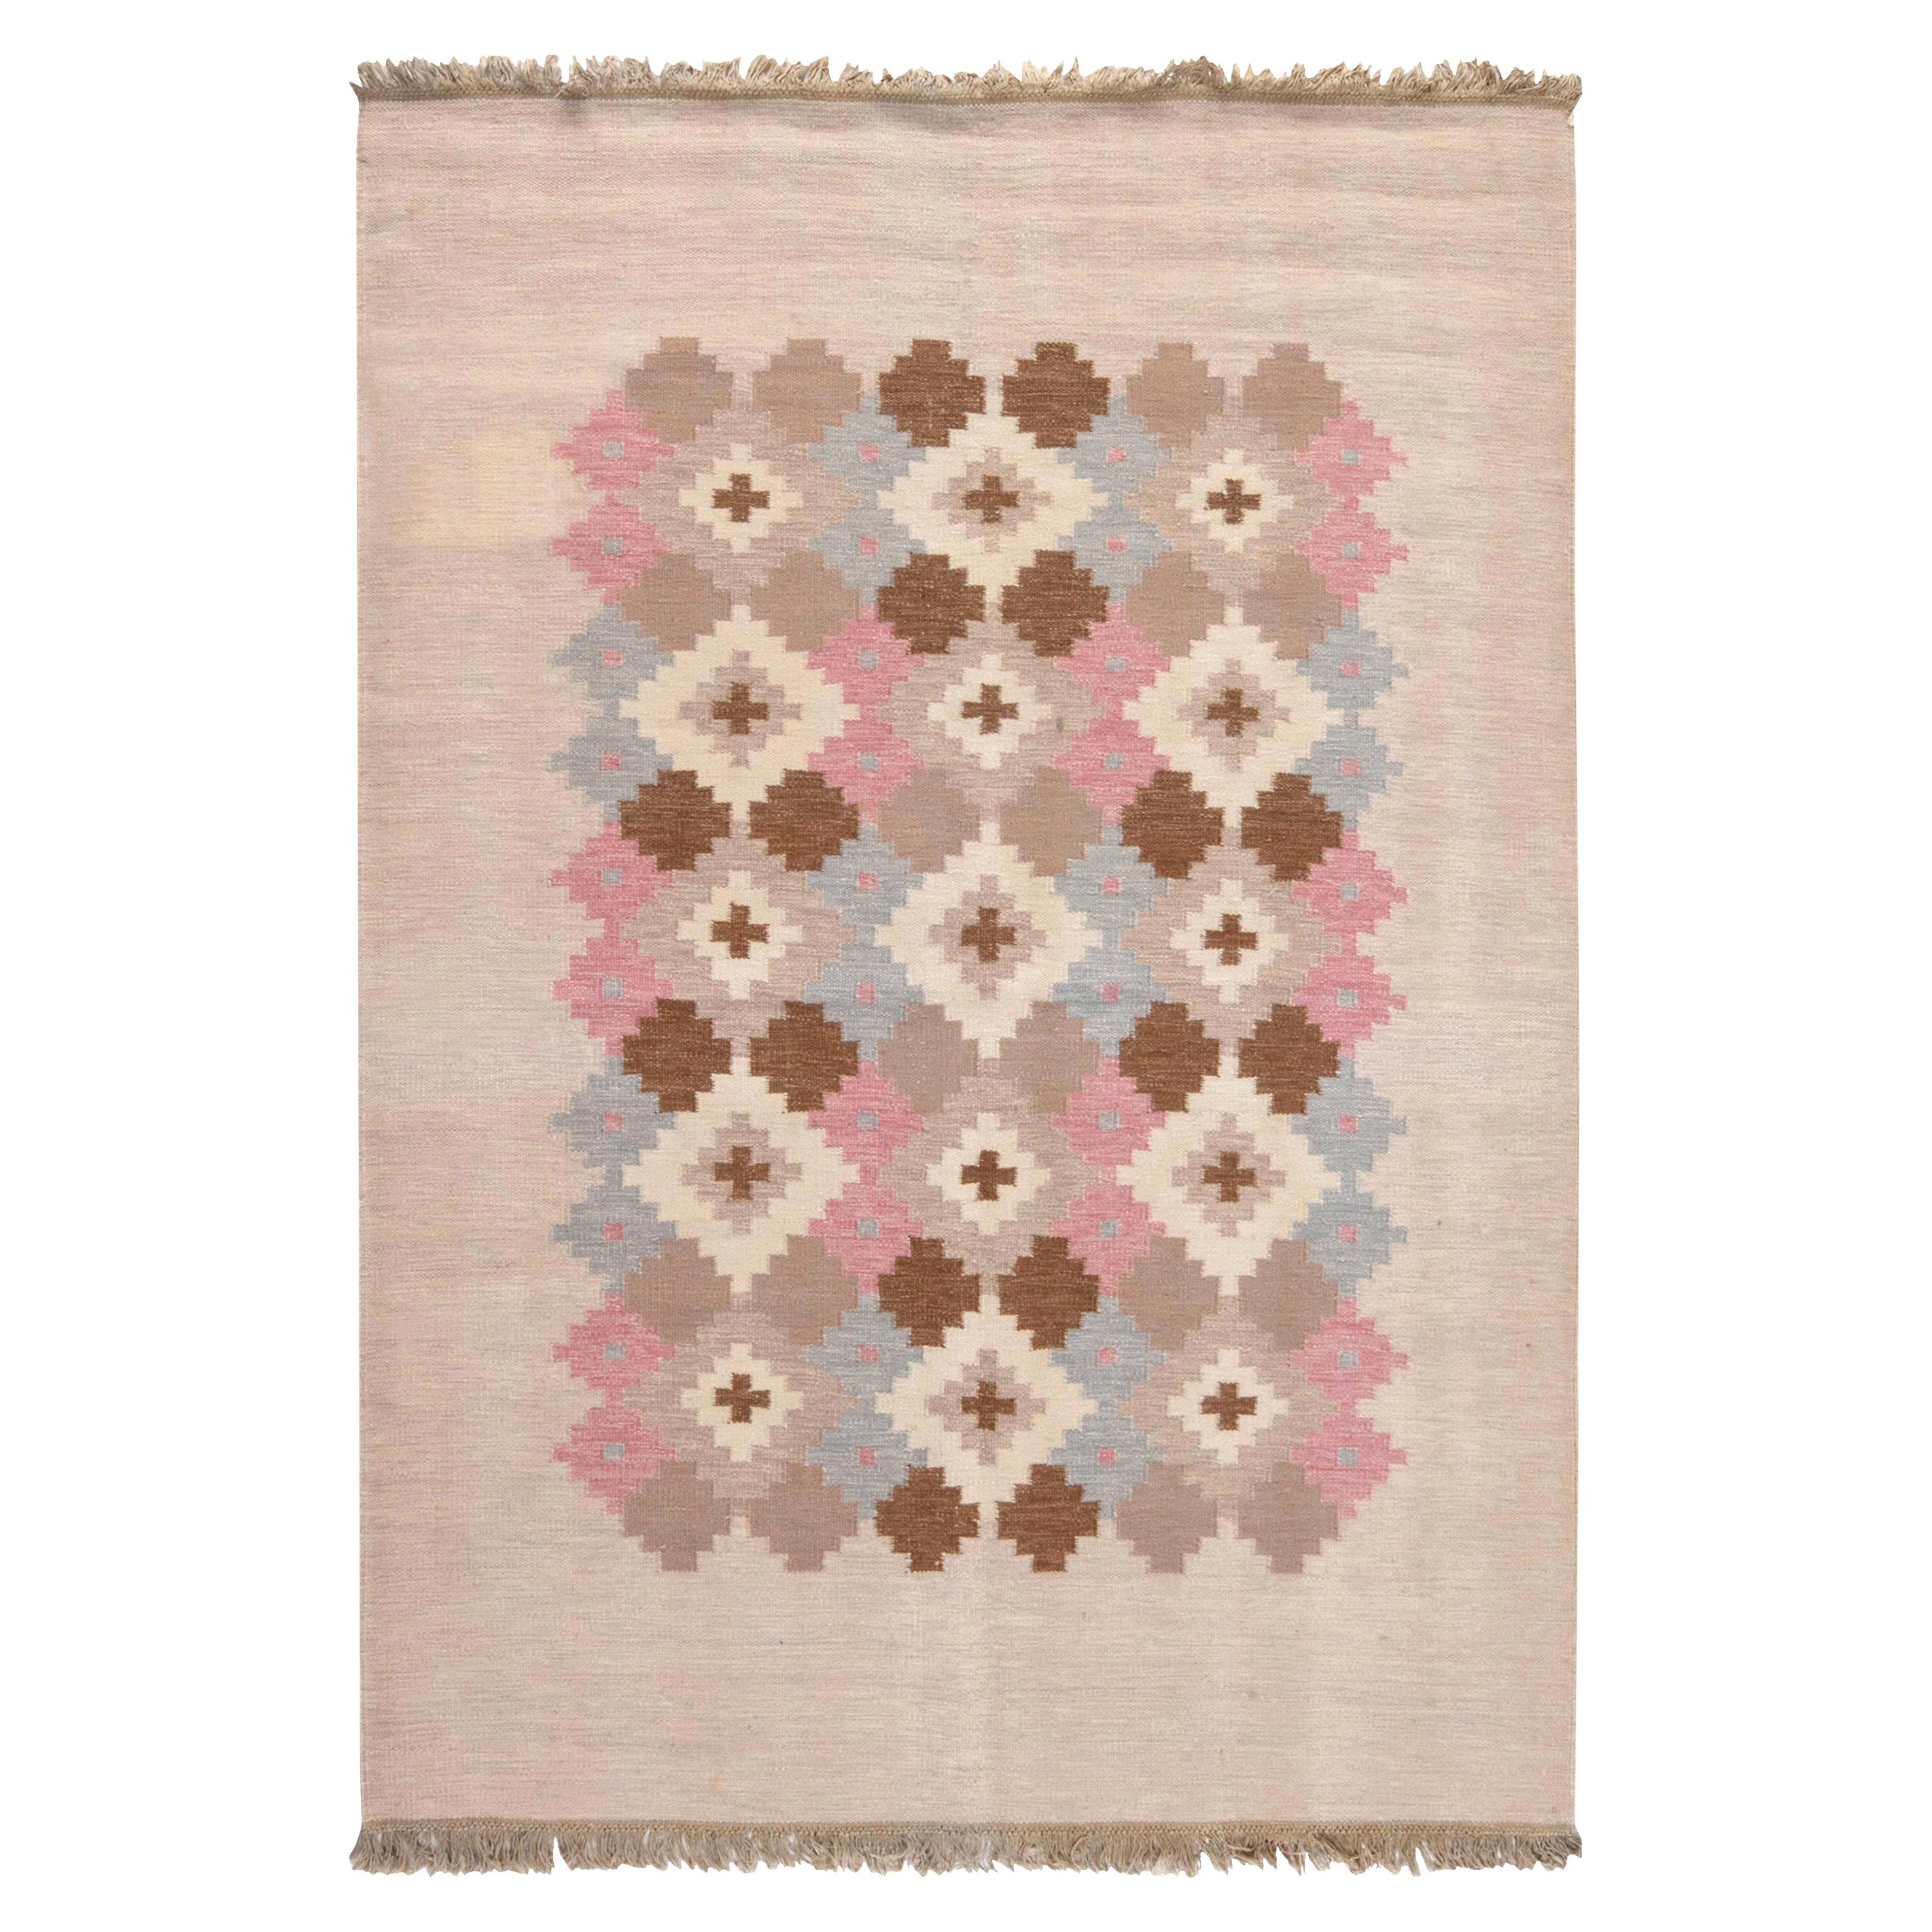 Mid-20th century Swedish Beige, Pink, Brown, Gray Wool Rug by Doris Leslie Blau